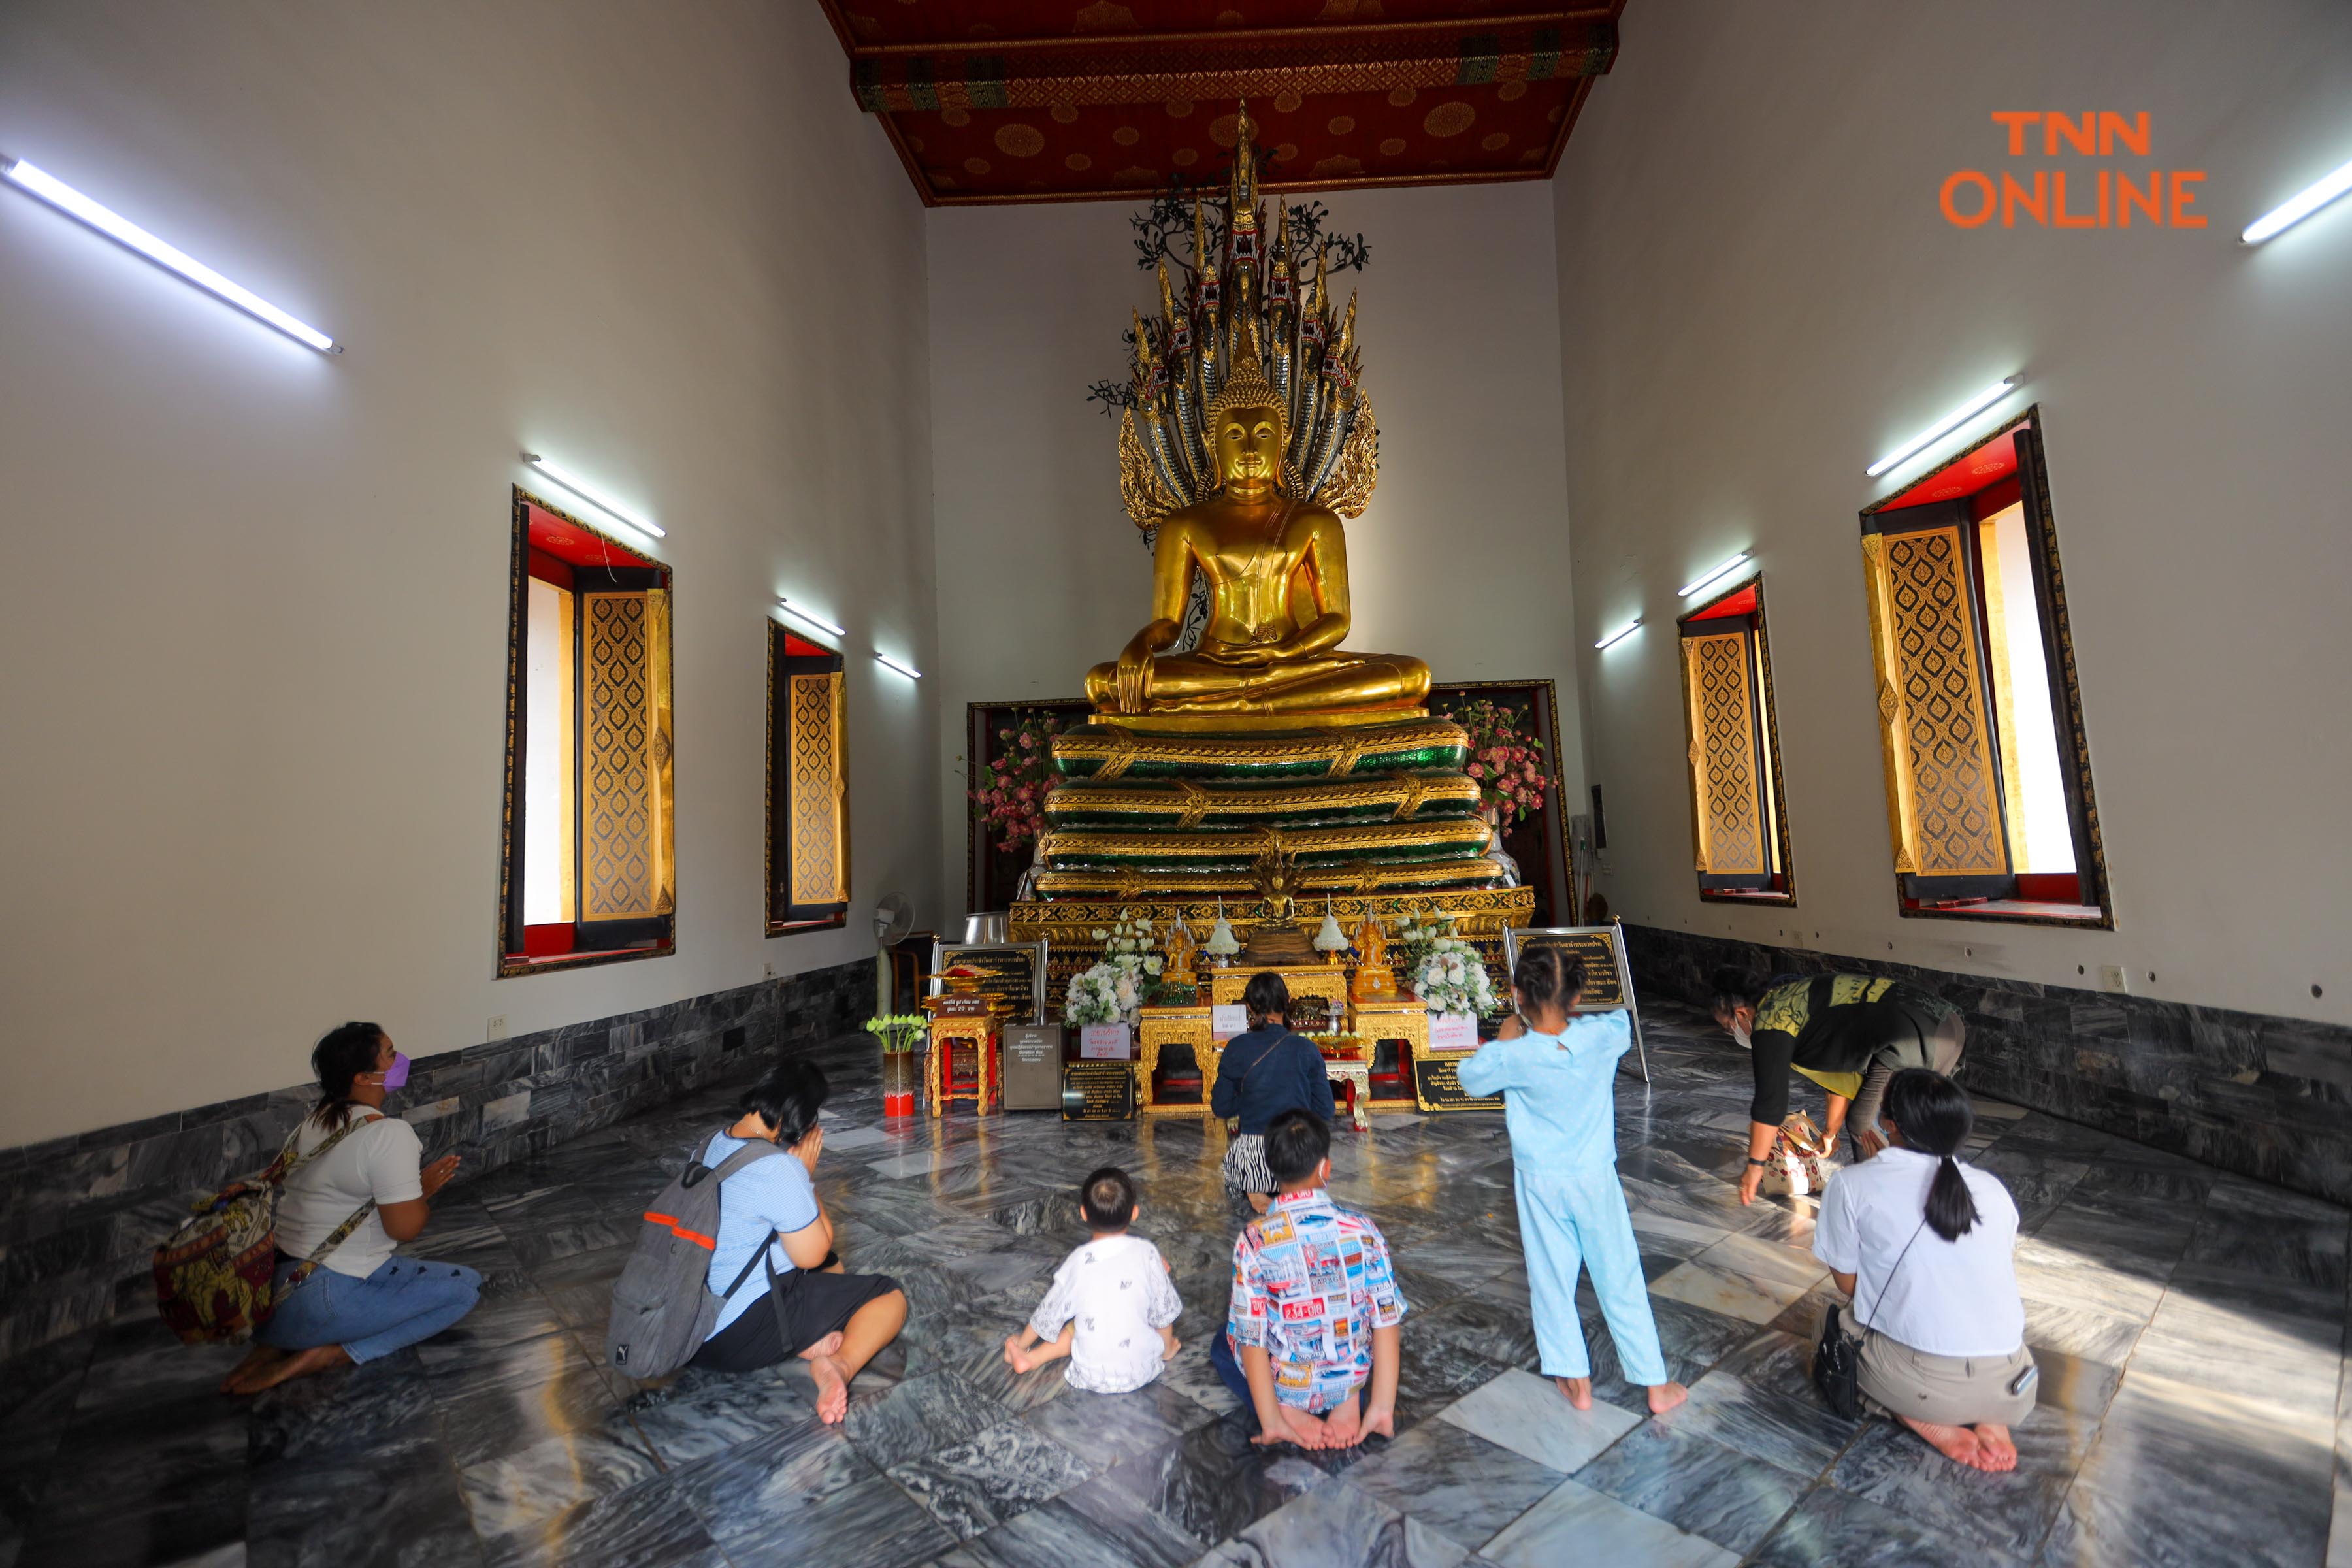 ประมวลภาพ “วัดโพธิ์”เปิดรับนักท่องเที่ยวชาวไทยและต่างชาติเข้าเที่ยวชม 